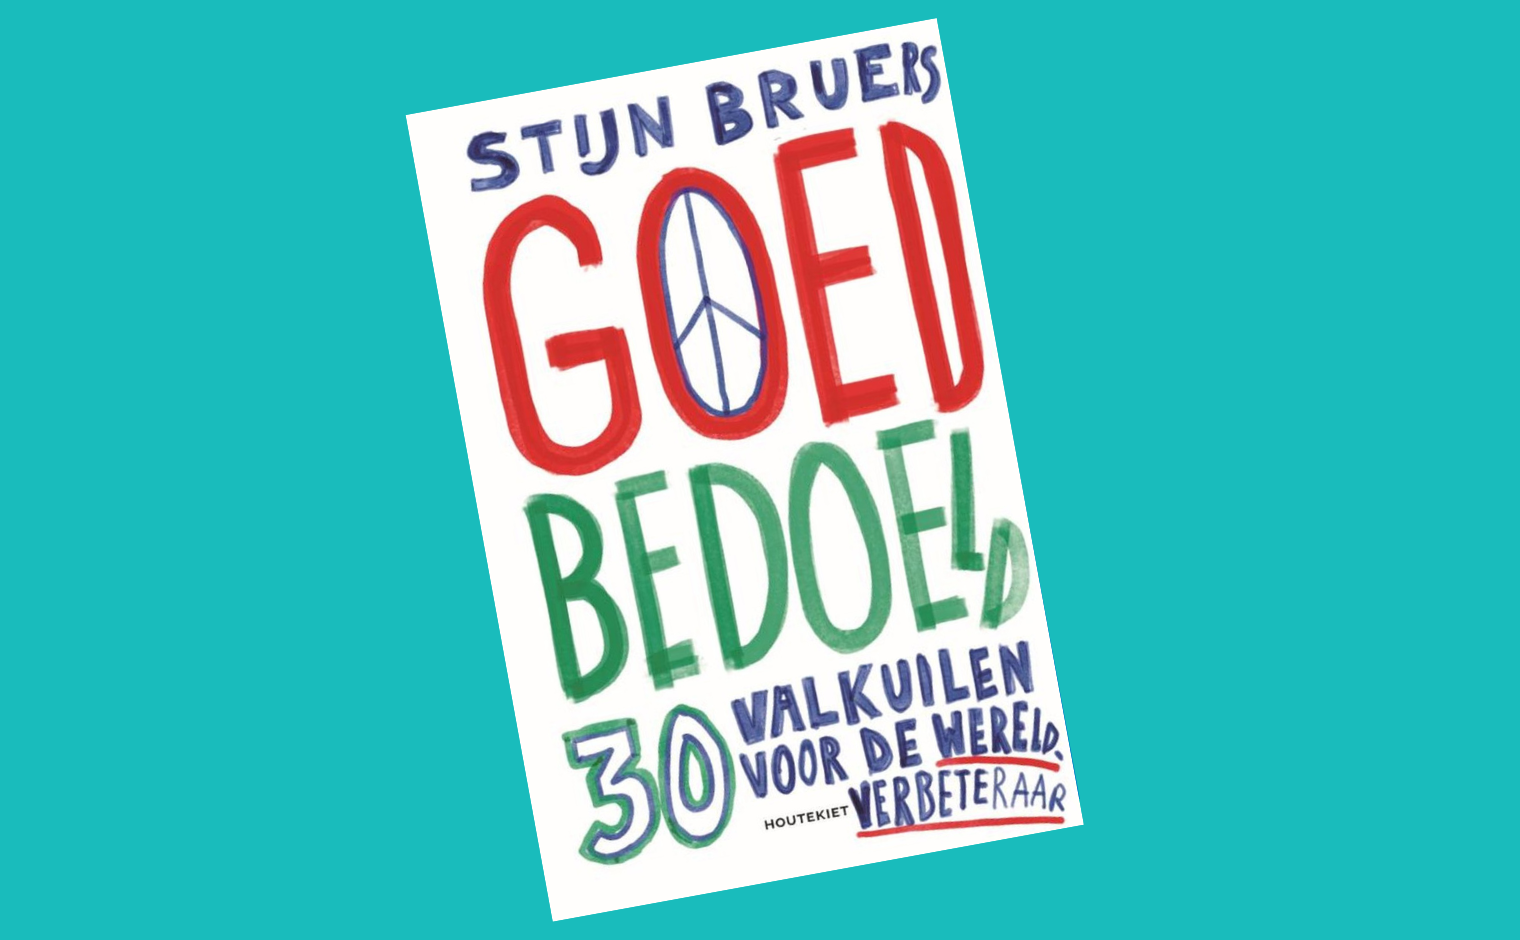 Cover van het boek 'Goed bedoeld' van Stijn Bruers.